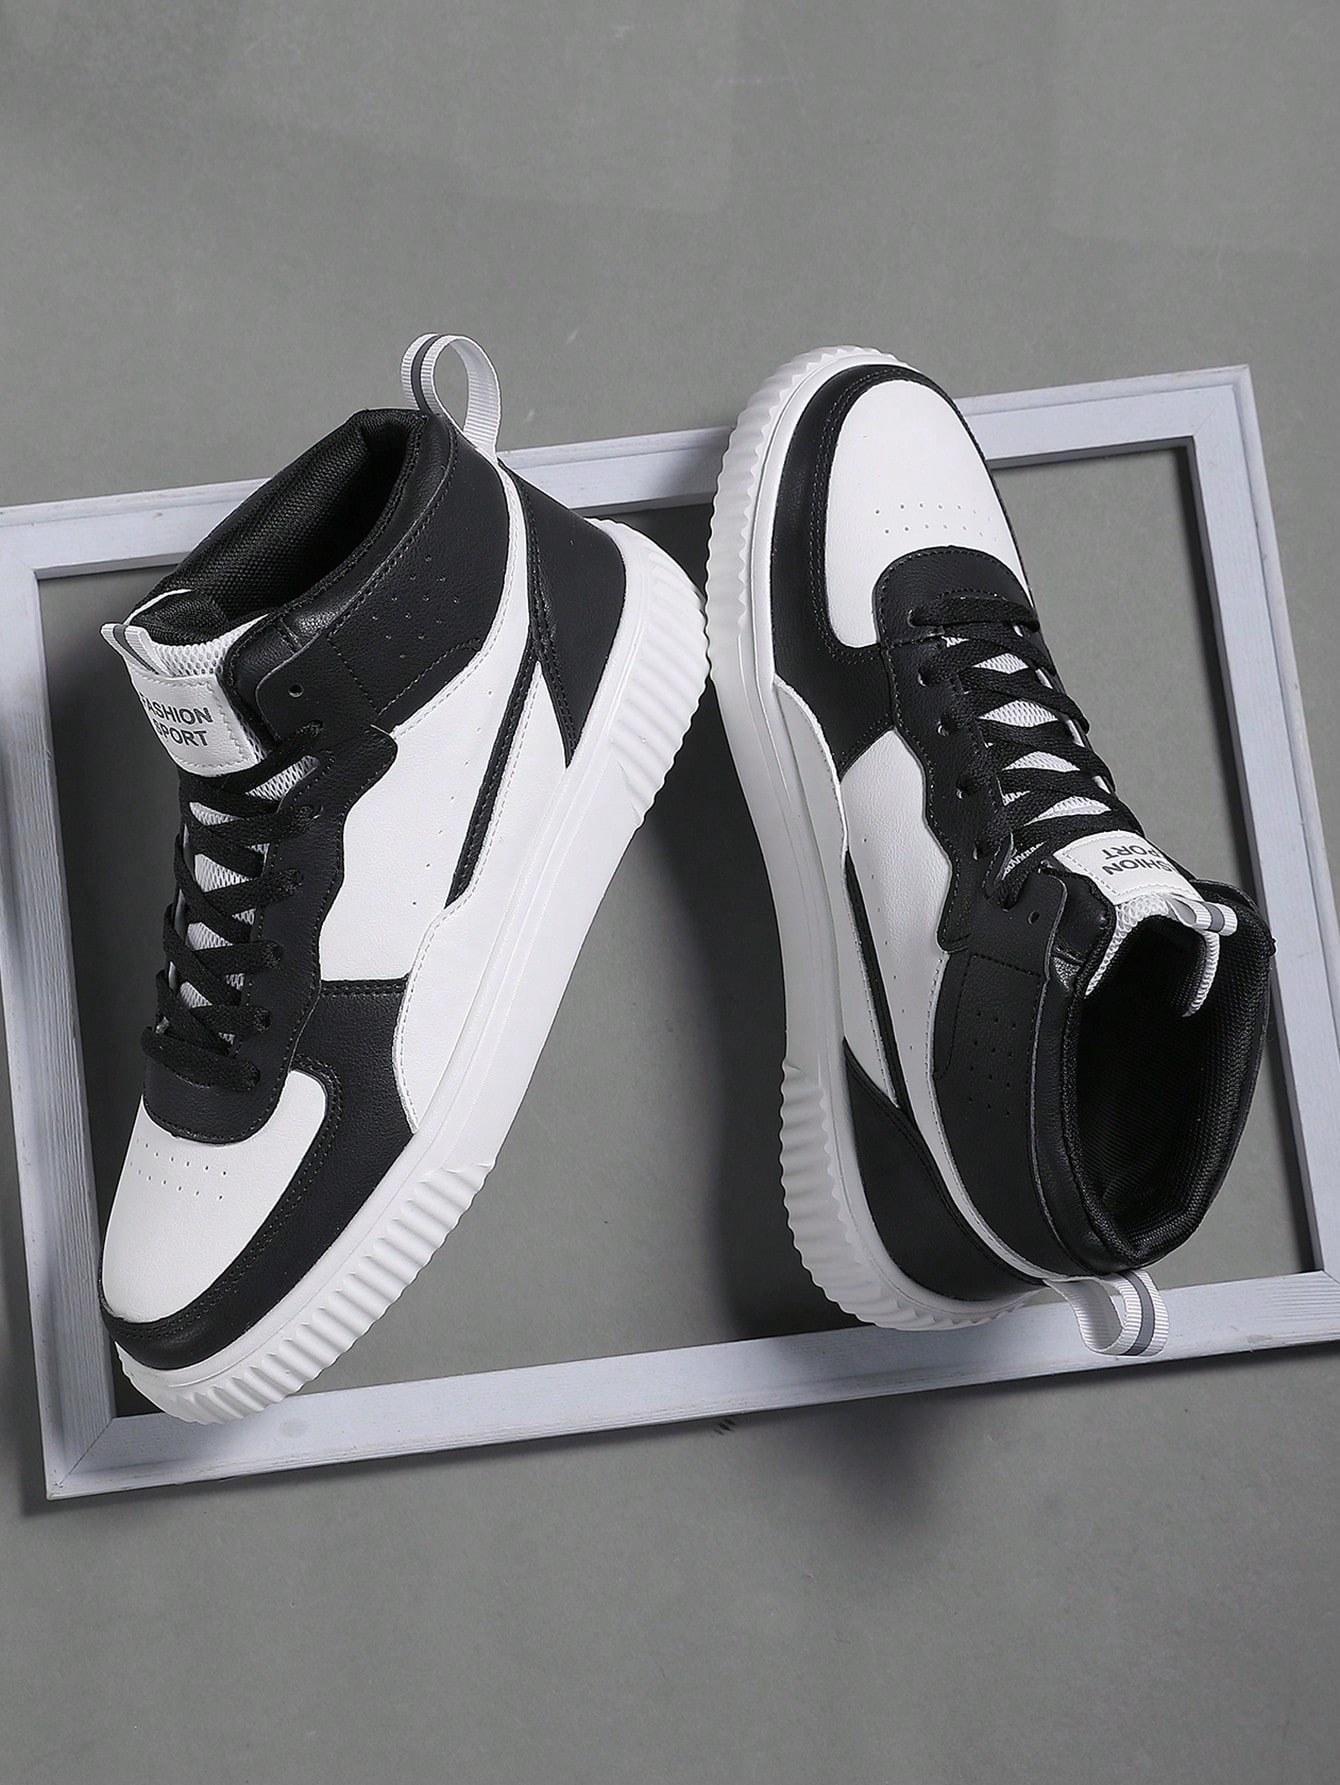 Мужская обувь: повседневные кроссовки с цветными блоками, черное и белое